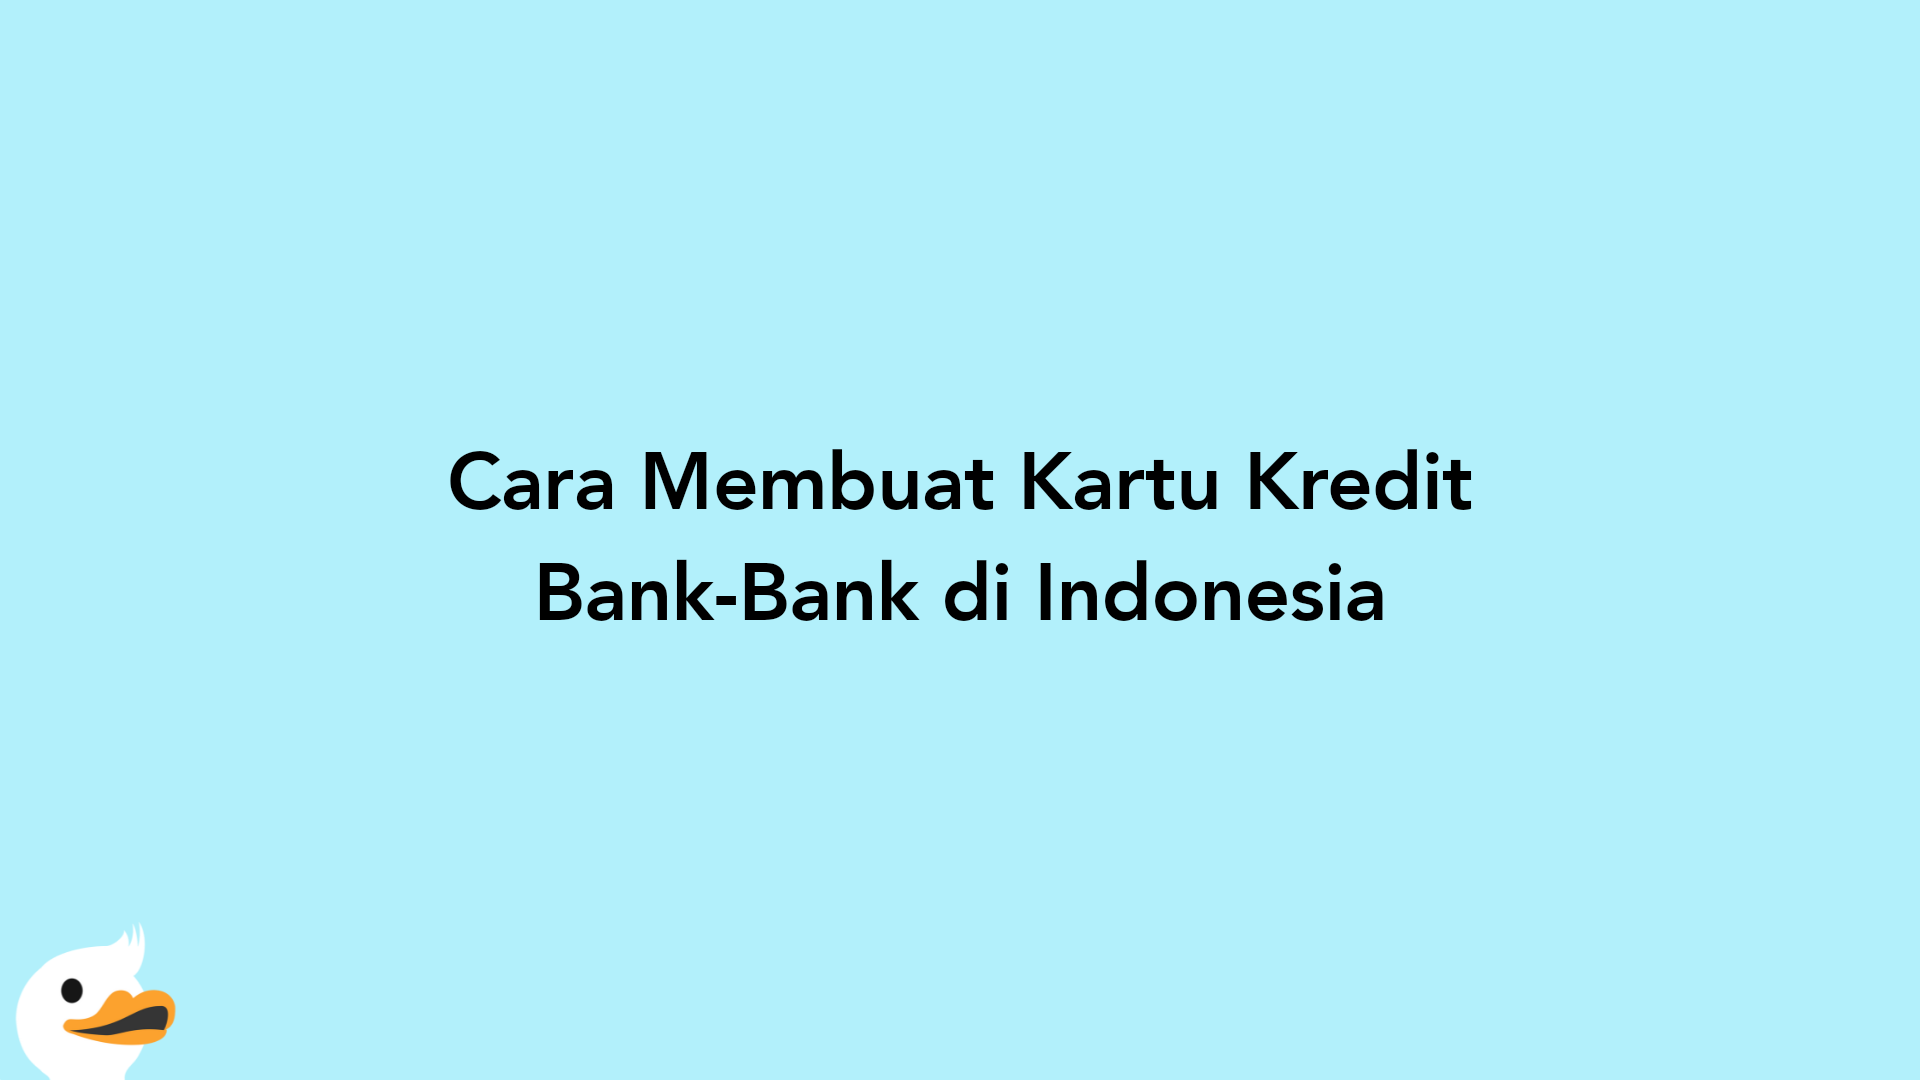 Cara Membuat Kartu Kredit Bank-Bank di Indonesia